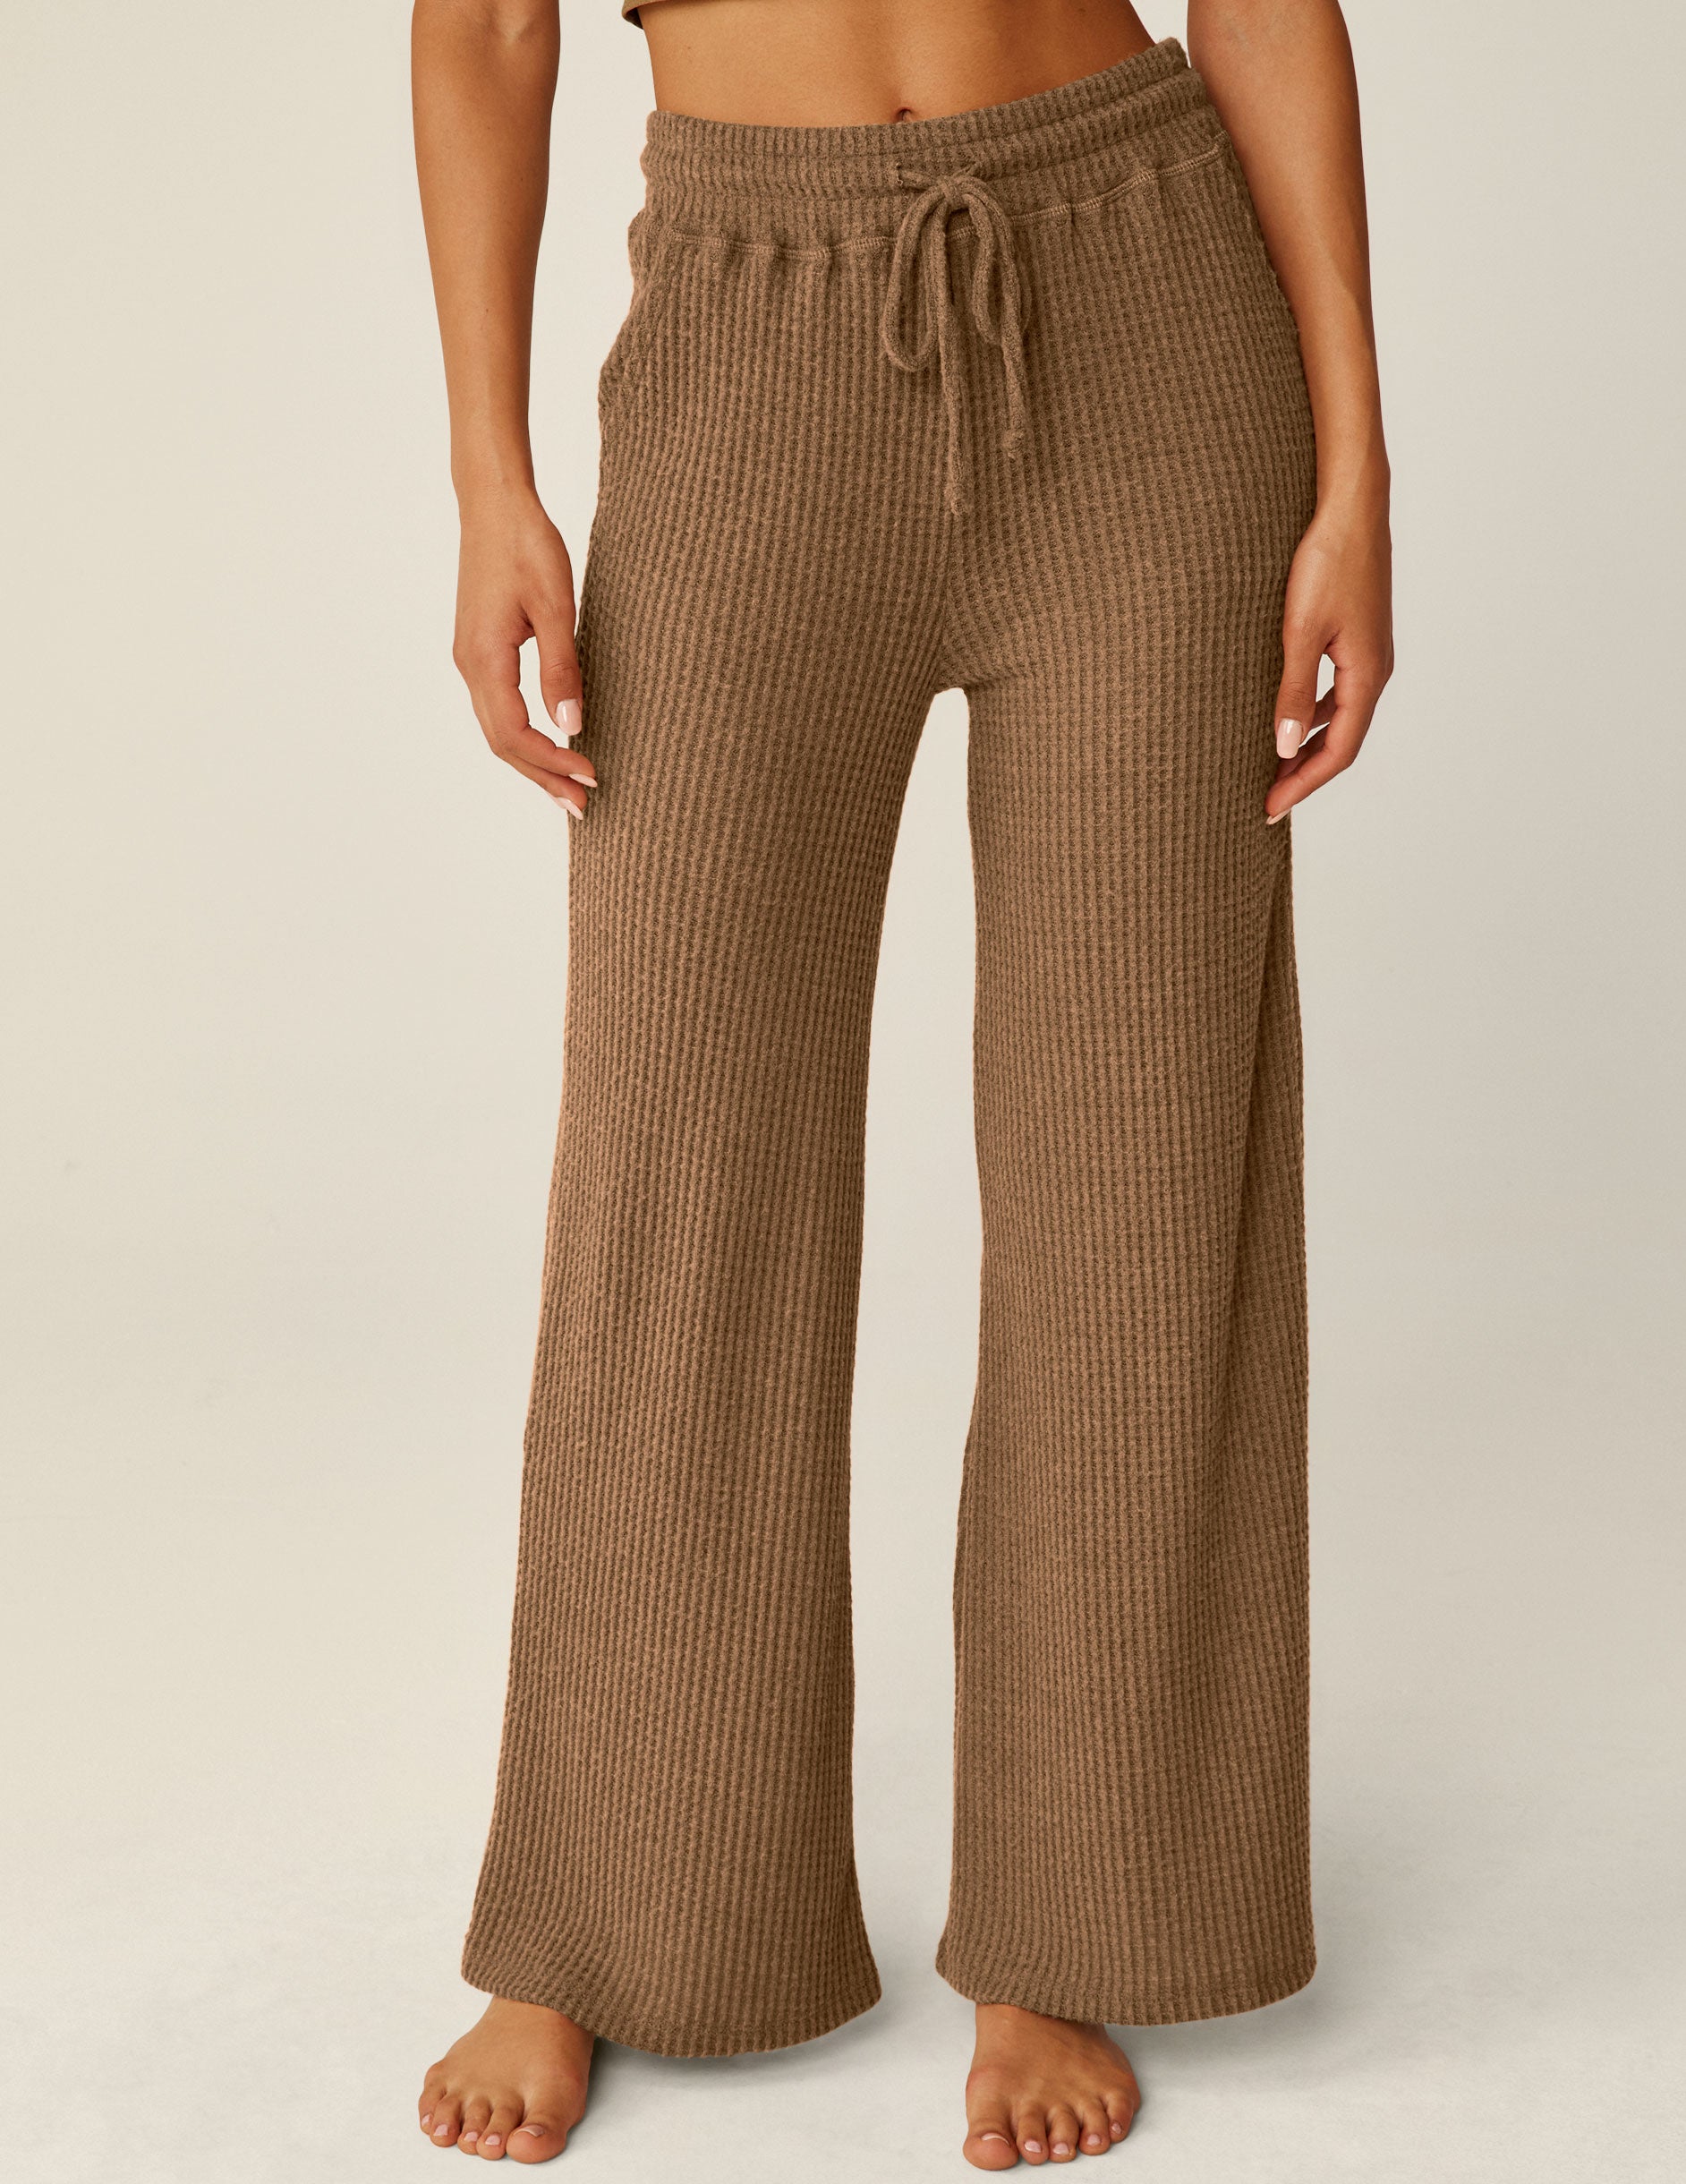 brown waffle knit pants with drawstring at waistband. 